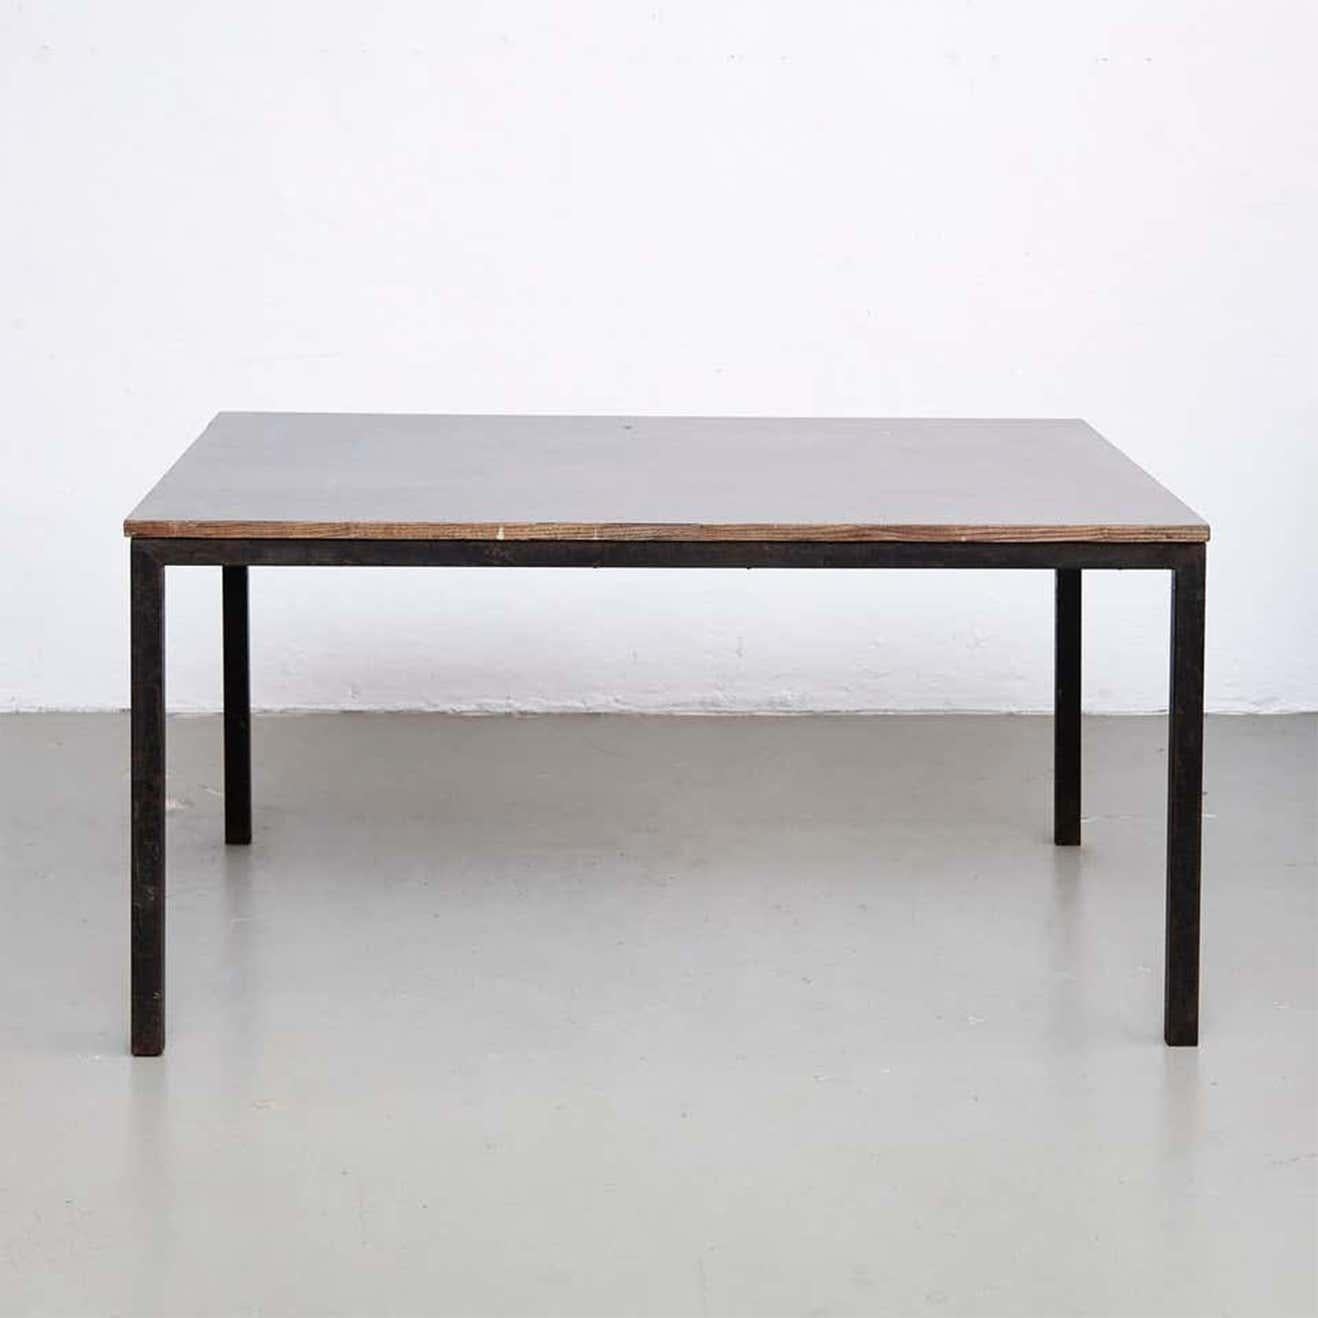 Tisch, entworfen von Charlotte Perriand, um 1950.

Holz, Metallrahmen Beine.

Provenienz: Cansado, Mauretanien (Afrika).

In gutem Originalzustand mit geringen alters- und gebrauchsbedingten Abnutzungserscheinungen, die eine schöne Patina